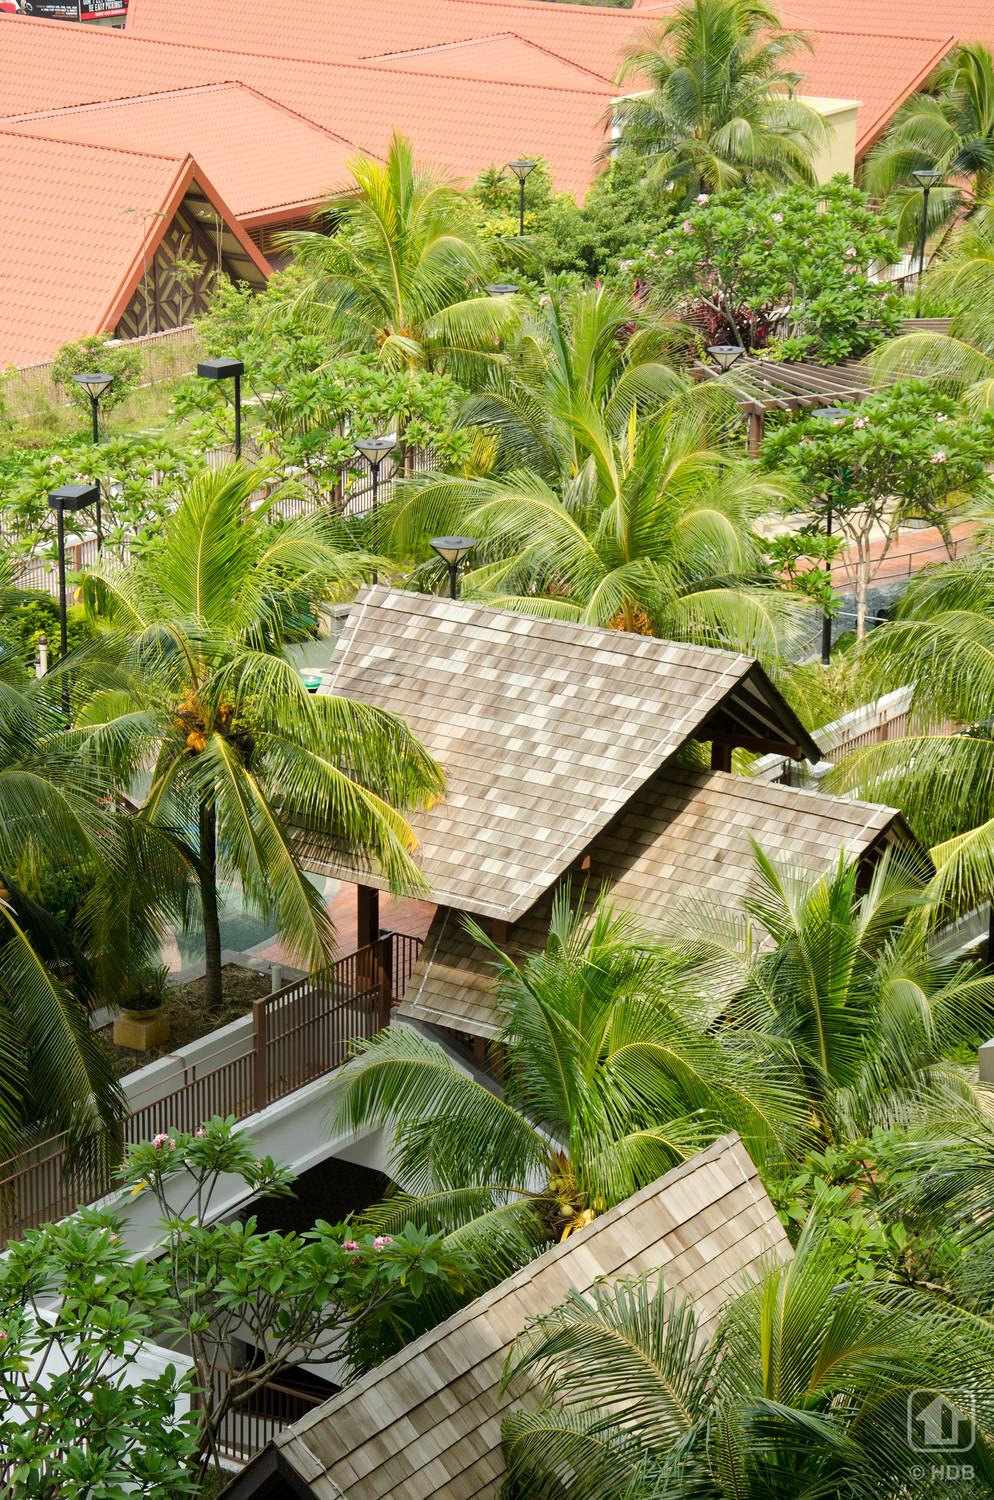 Roof garden